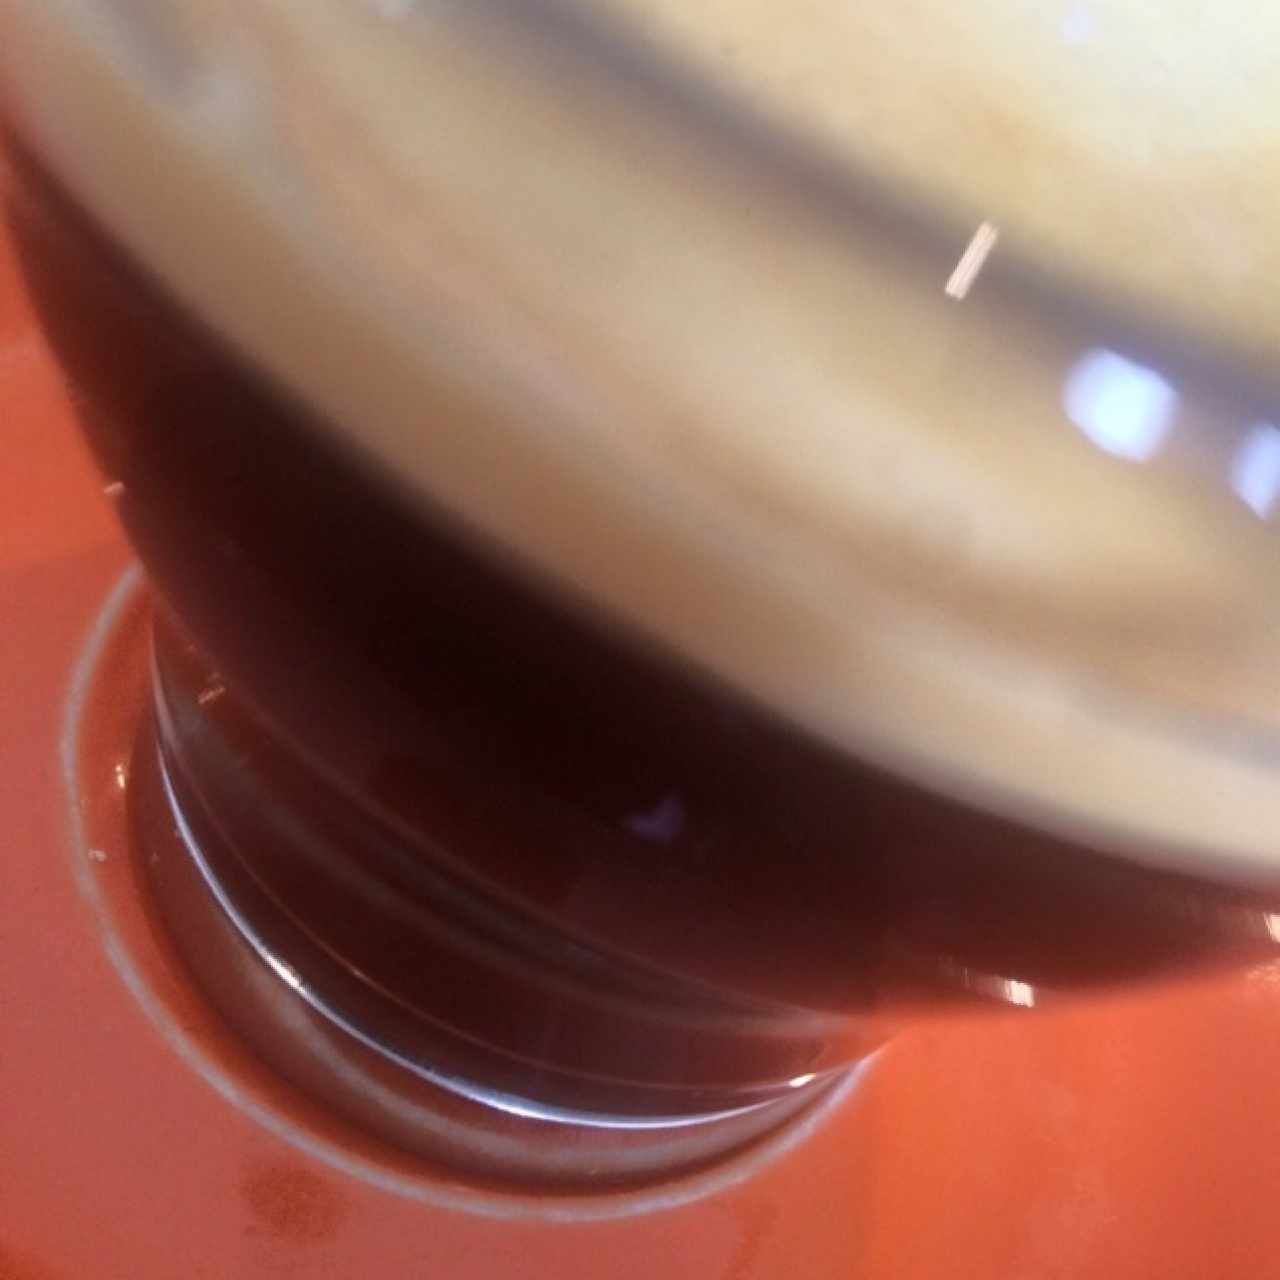 Espresso